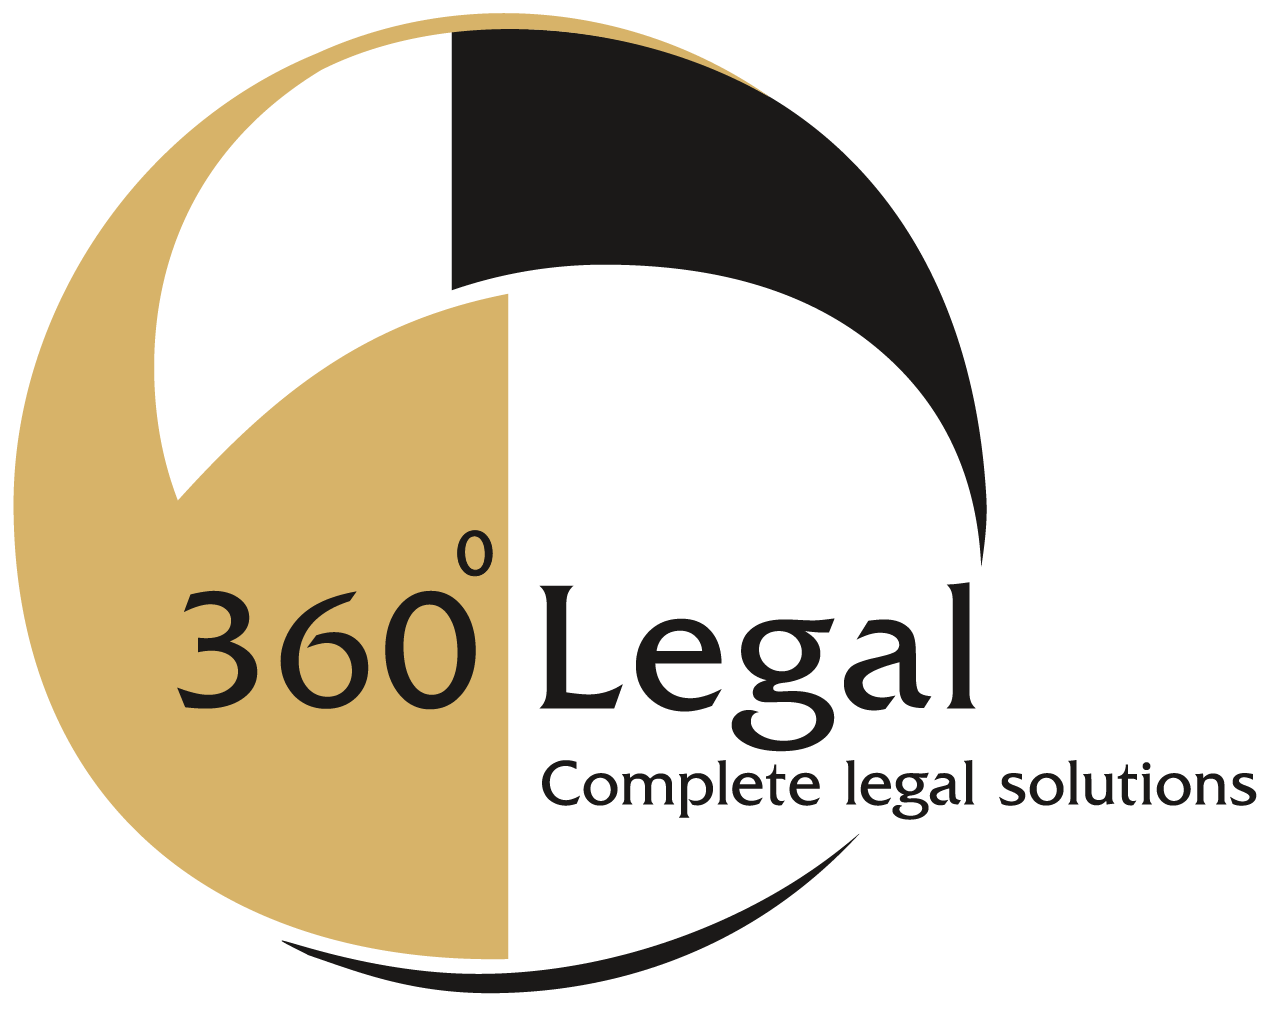 360 Legal